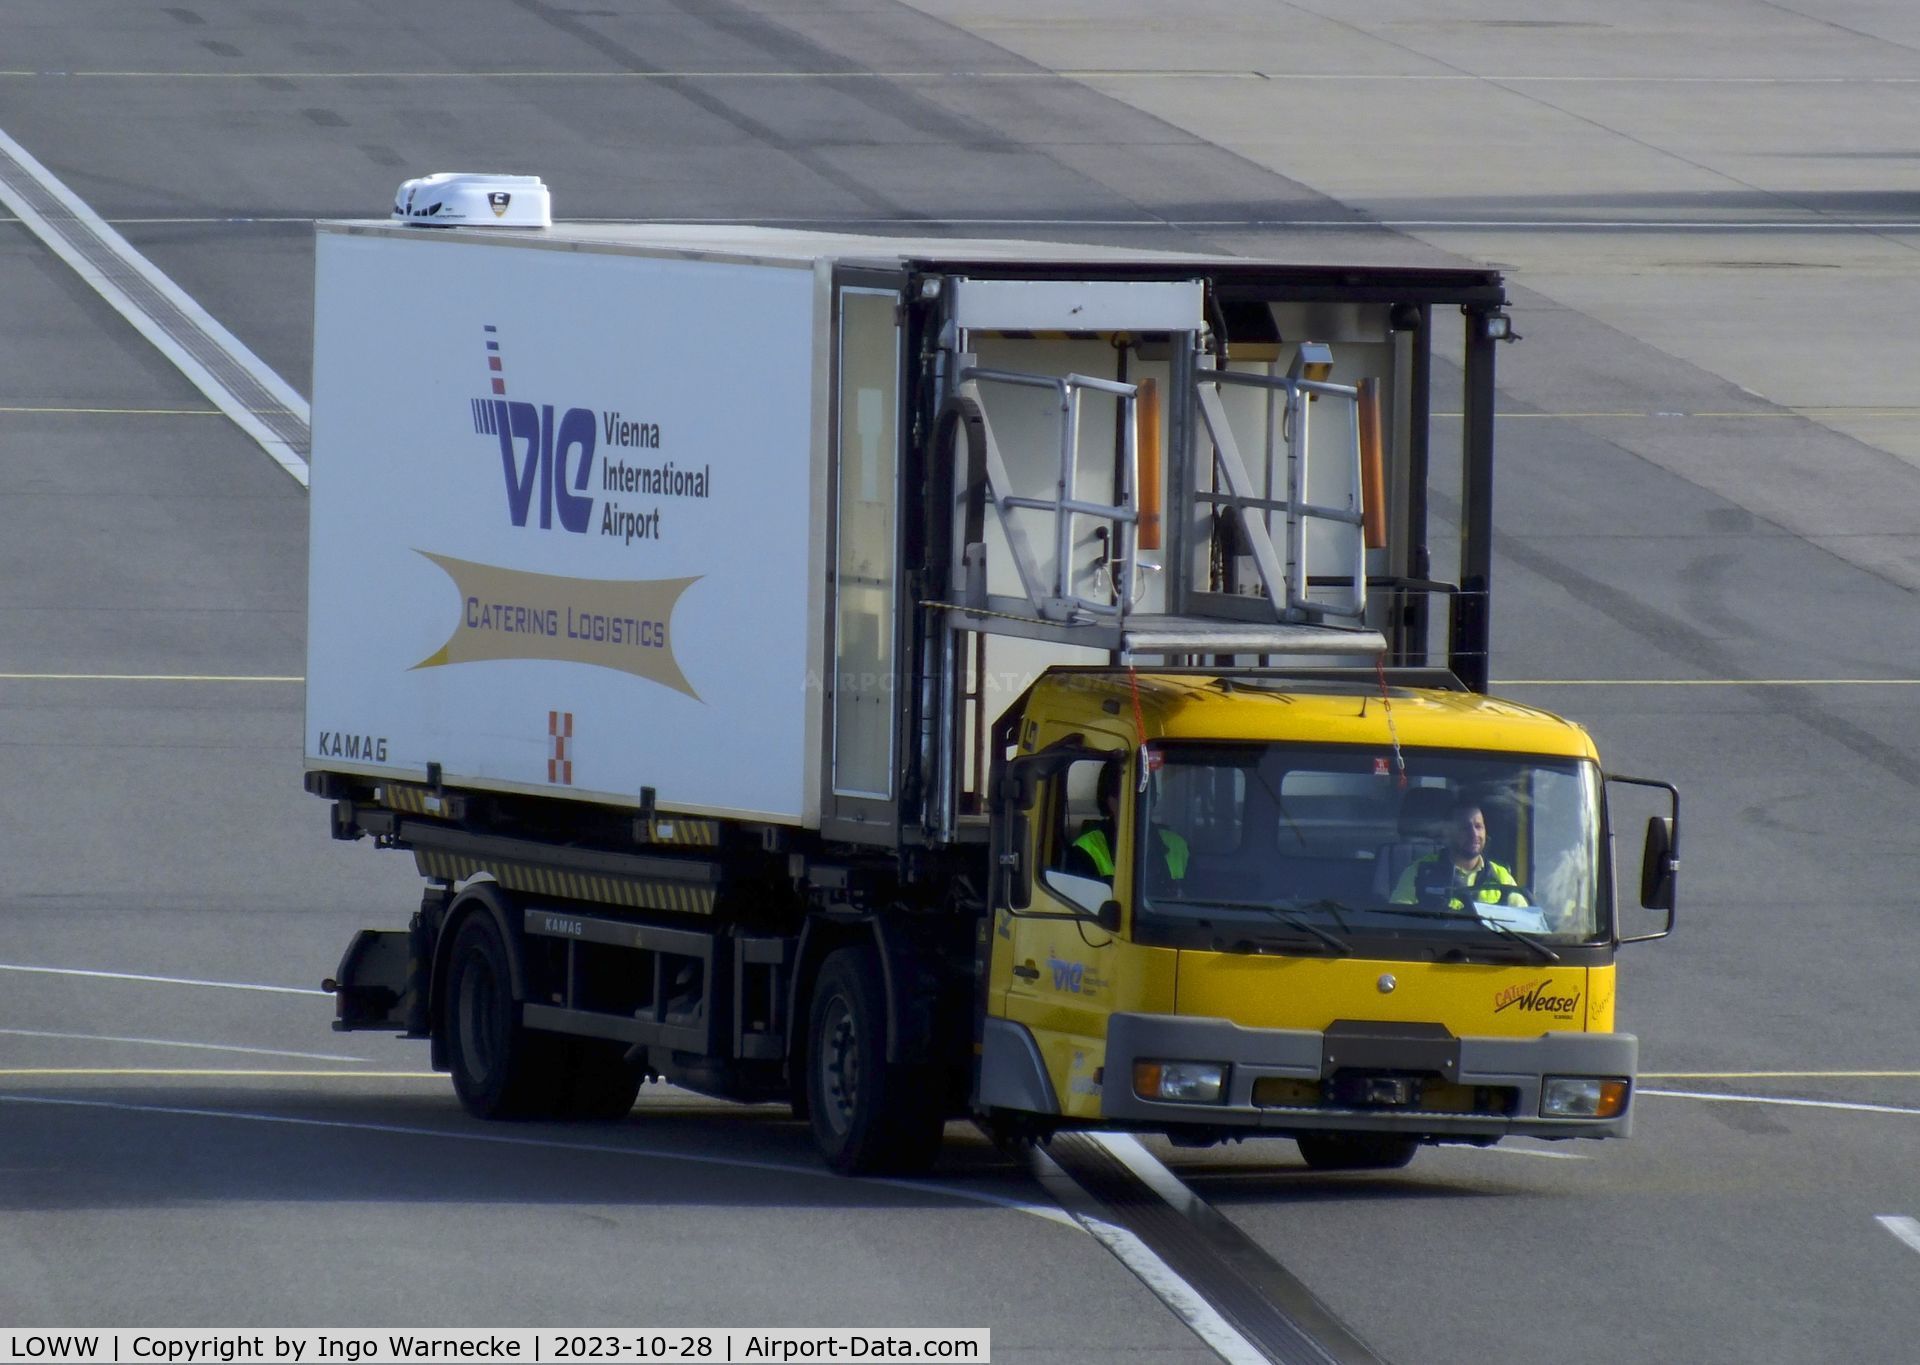 Vienna International Airport, Vienna Austria (LOWW) - catering service truck at Wien airport